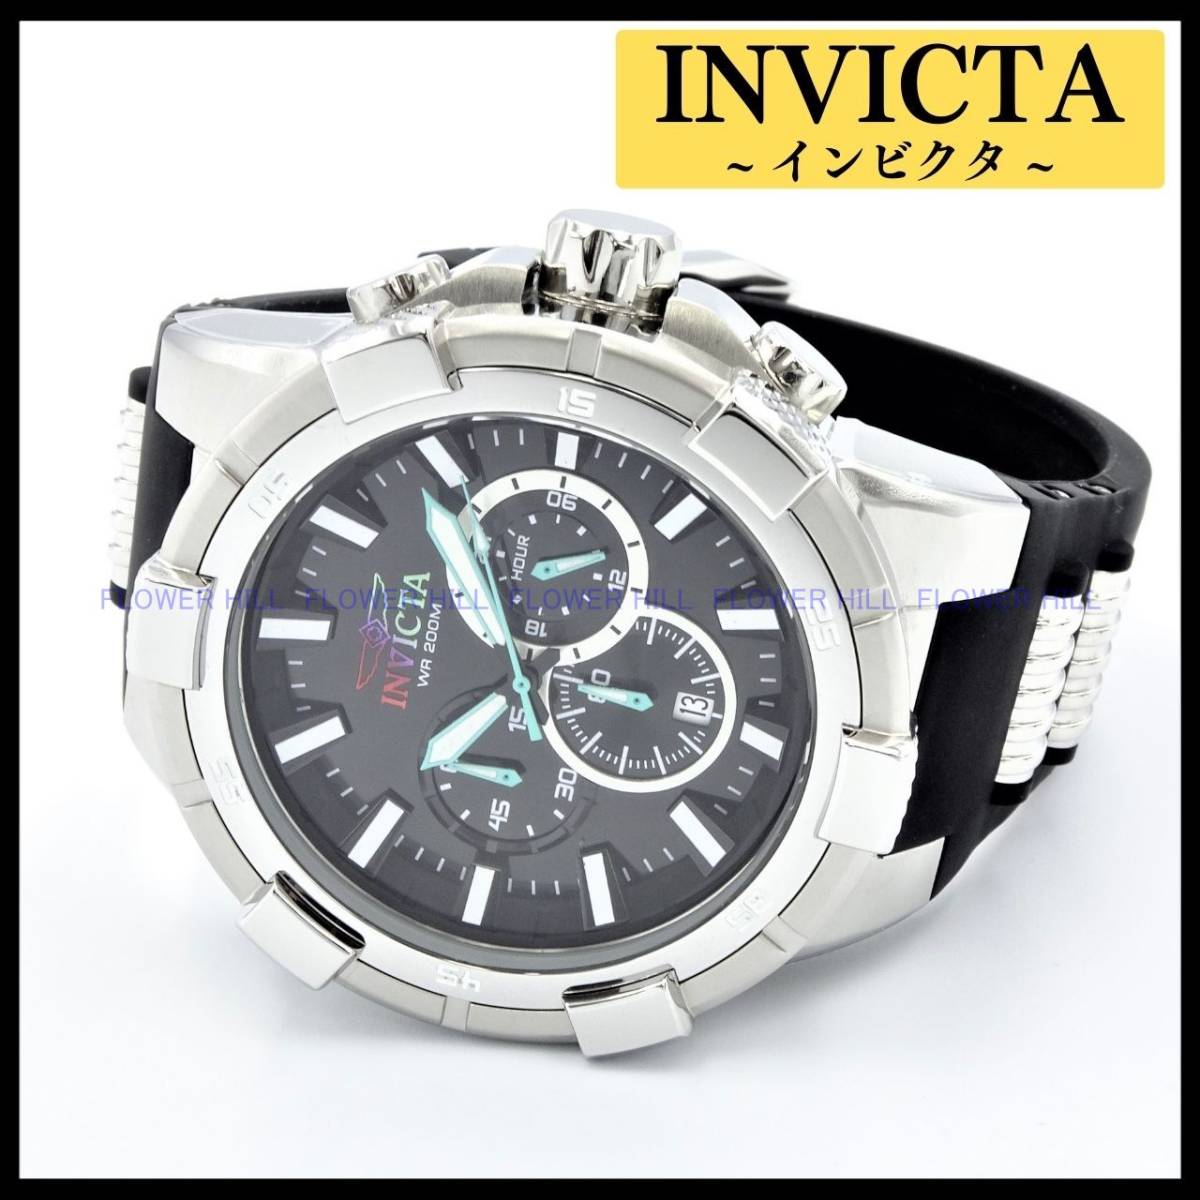 【新品・送料無料】インビクタ INVICTA 腕時計 アビエイター AVIATOR 23692 クォーツ クロノグラフ カレンダー シリコン